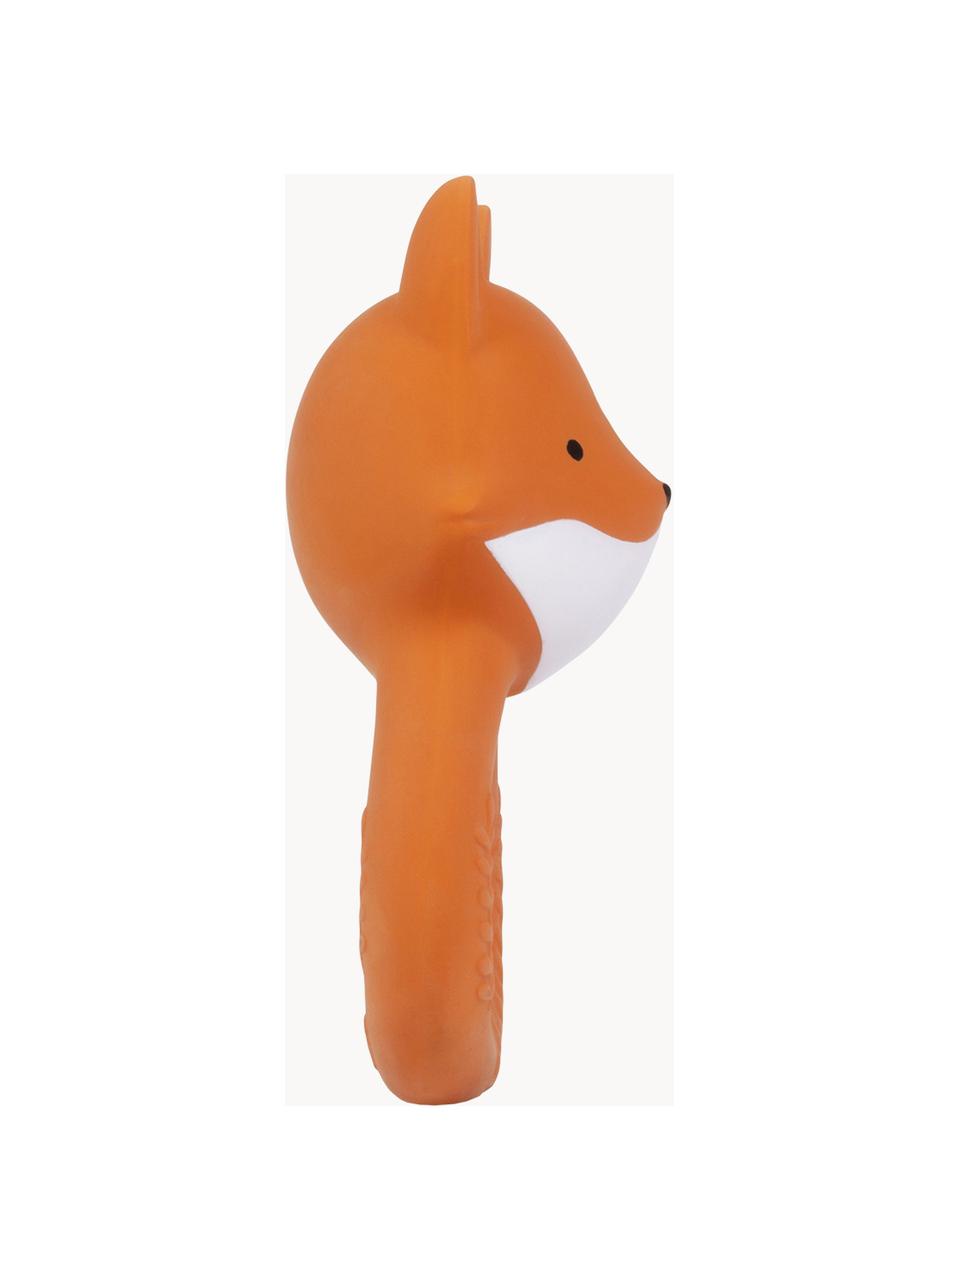 Bijtring Fox van natuurlijk rubber, Natuurlijk rubber, Oranje, B 7 x H 12 cm